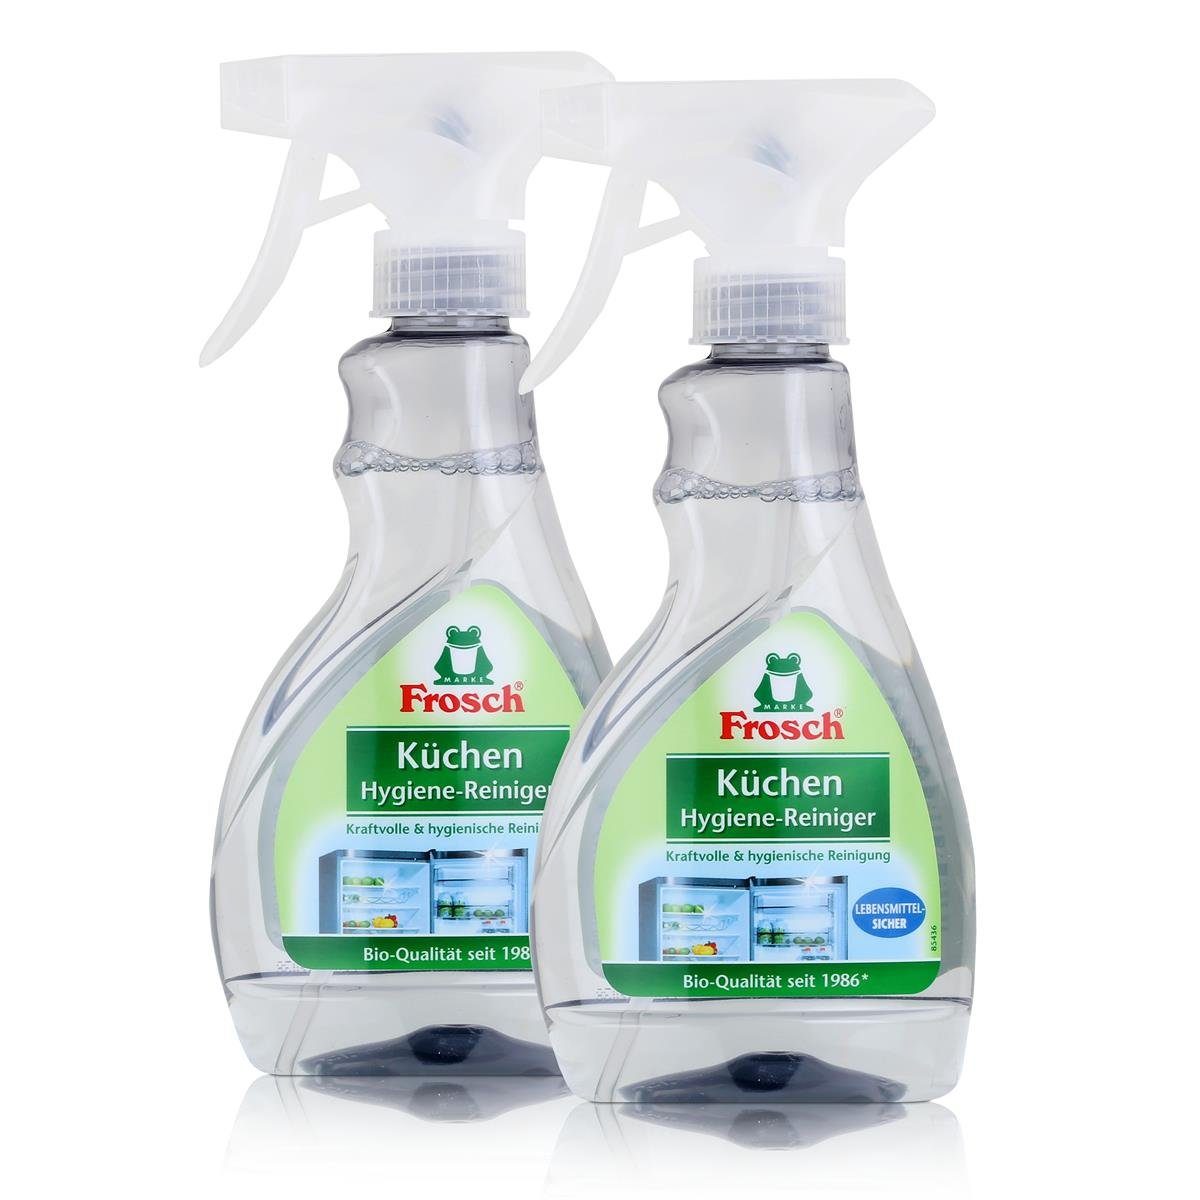 Küchenreiniger 300ml - (2er Pack) Frosch Hygiene-Reiniger FROSCH Küchen Lebensmittel-Sicher